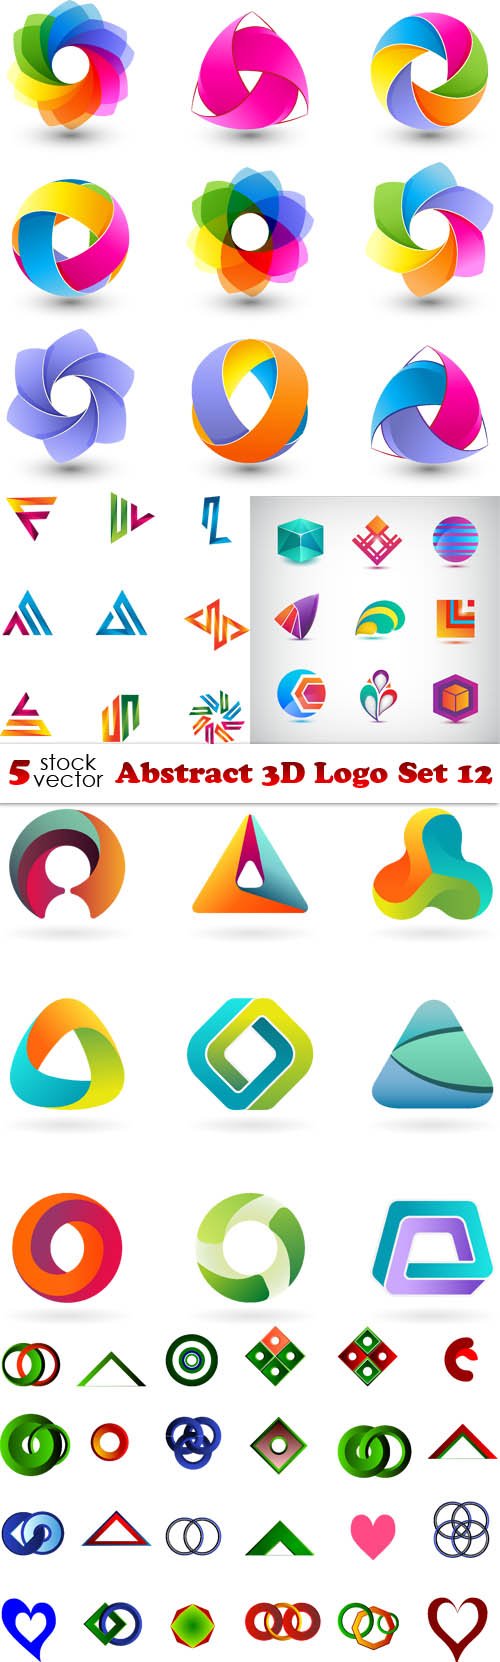 Vectors - Abstract 3D Logo Set 12